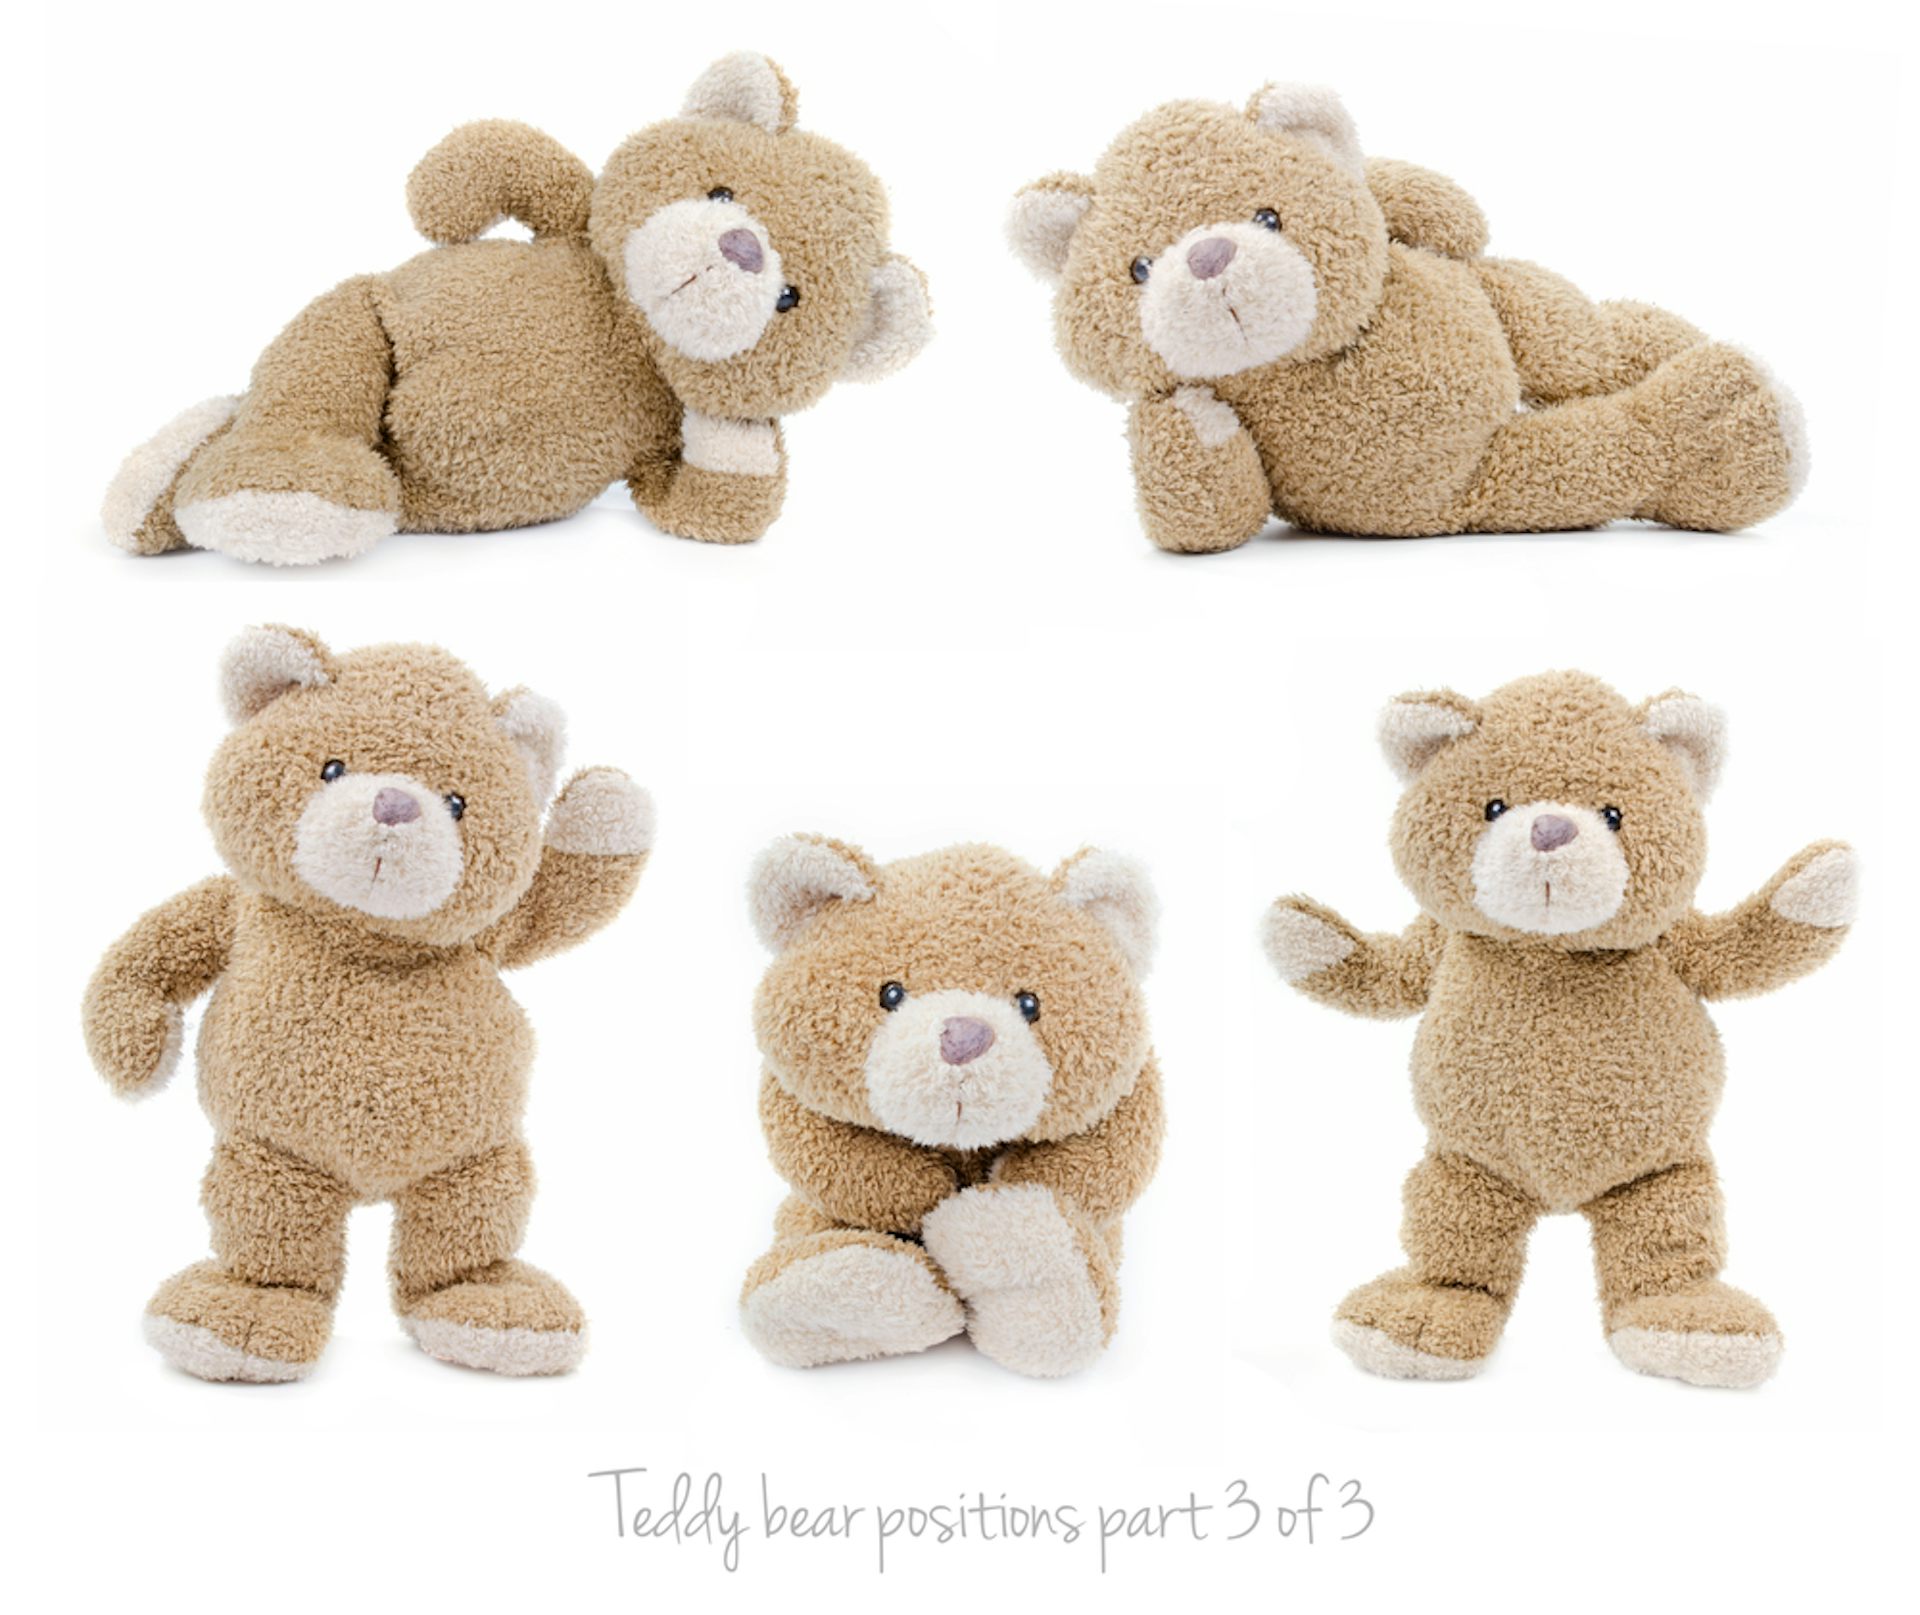 cuddly teddy bears